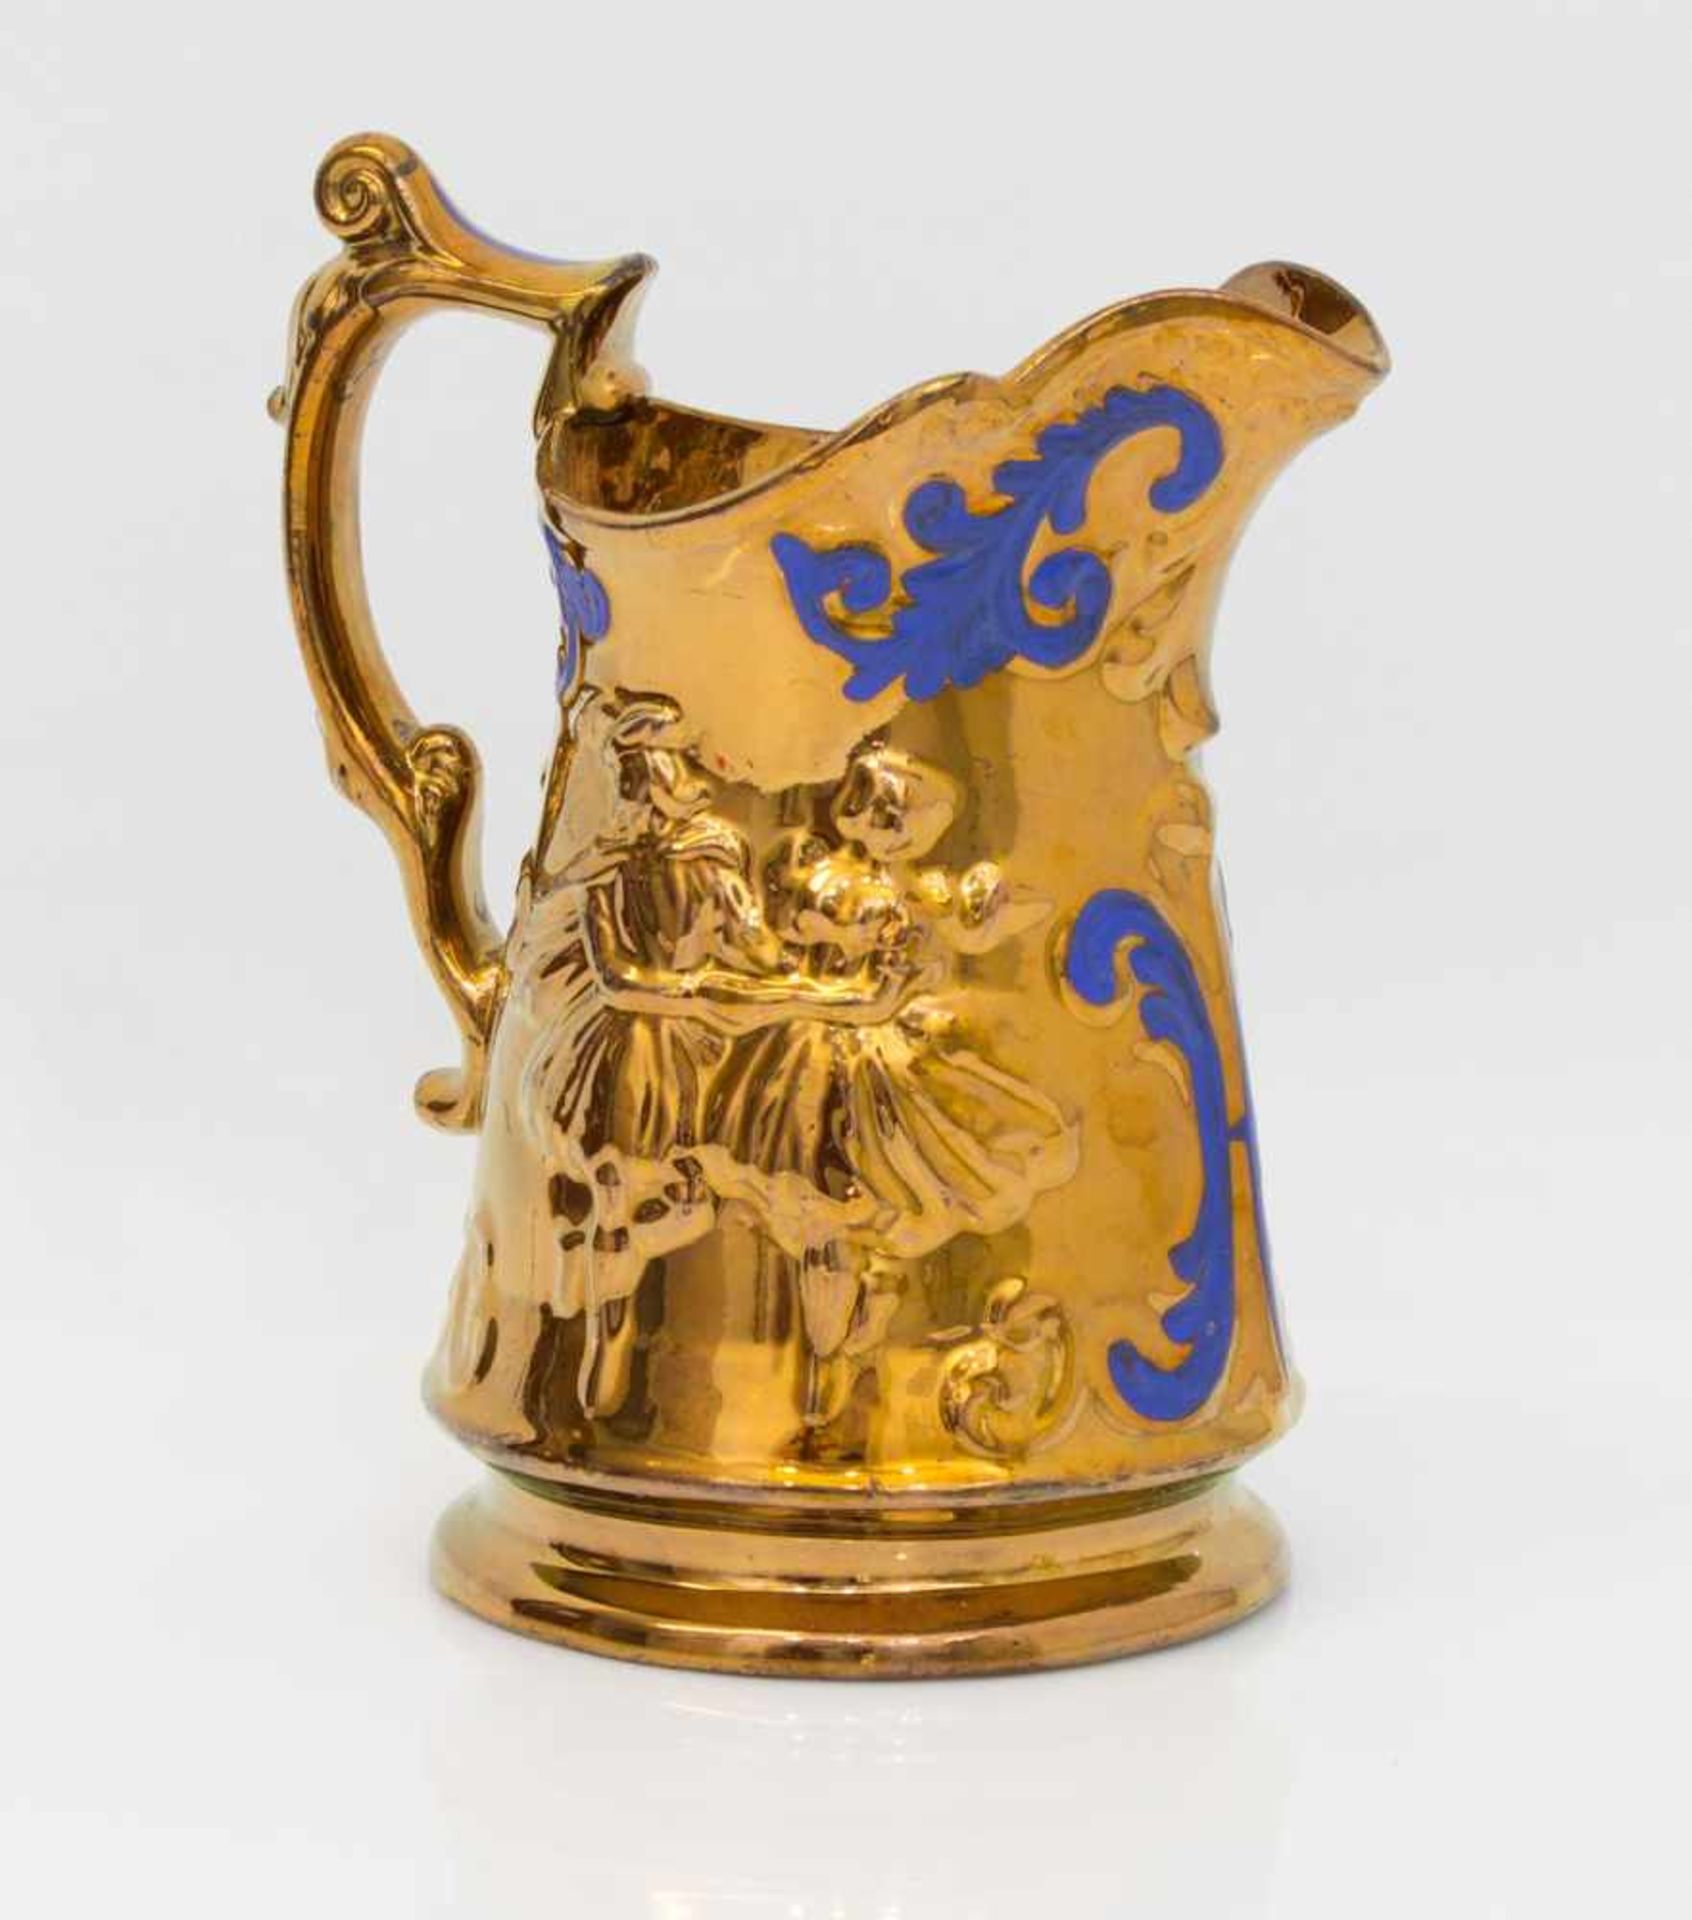 Milchkrug England 19. Jh., profilierte Wandung mit tanzendem Paar, Kupferlüsterglasur, H. 20 cm